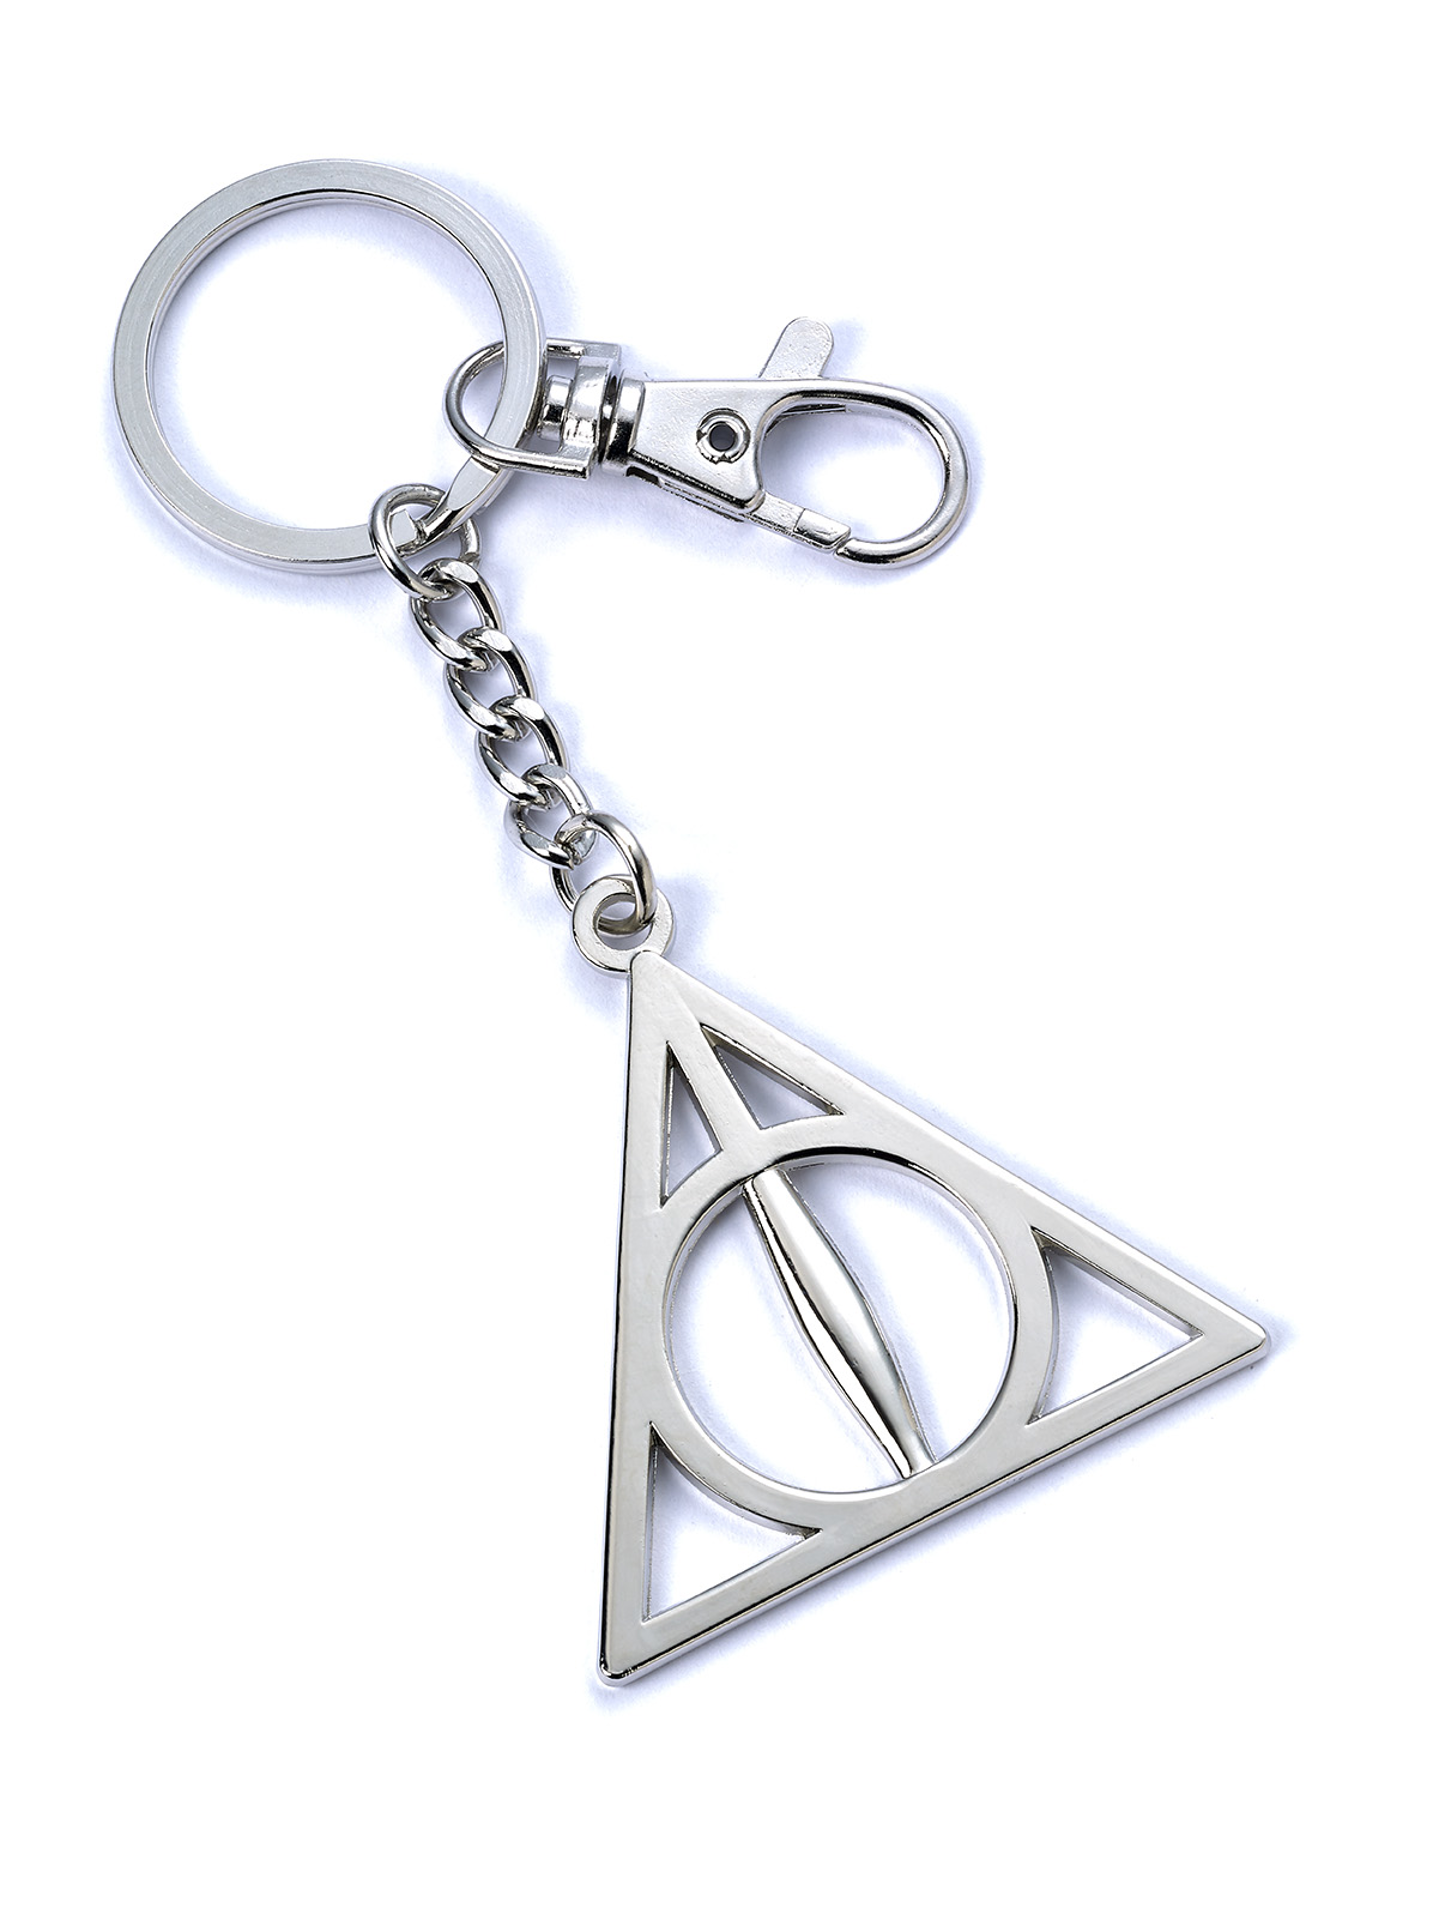 Harry Potter - Porte-clefs Reliques de la Mort